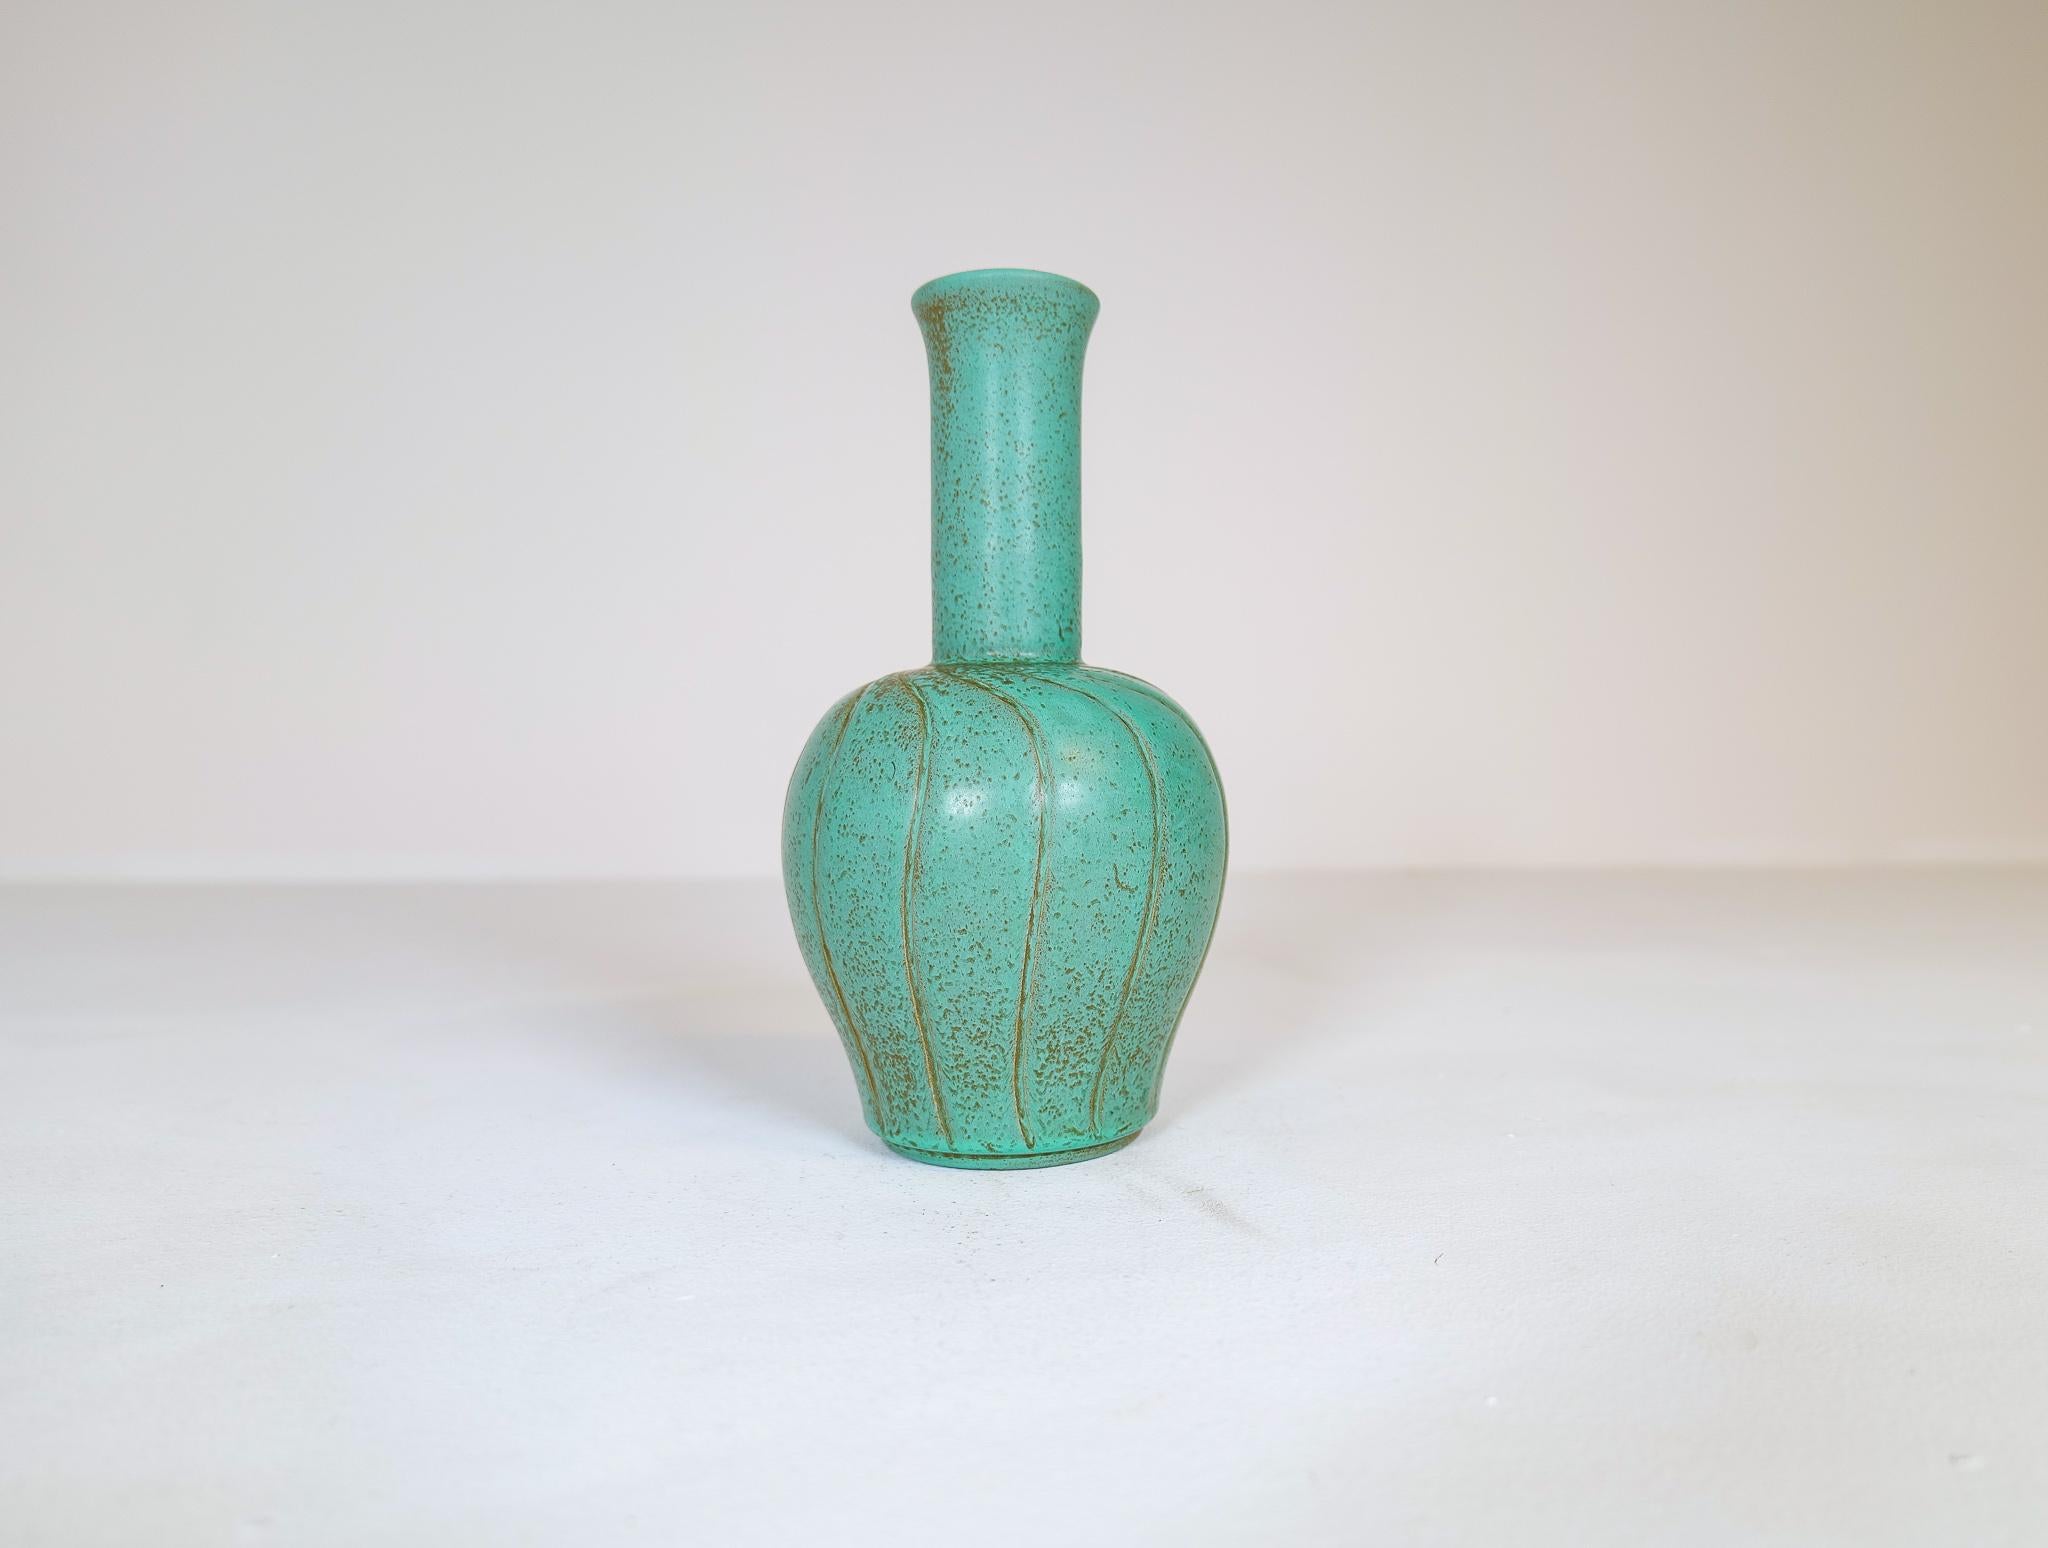 Wunderschöne Keramikvase, hergestellt in Schweden bei Bo Fajans und entworfen von Ewald Dahlskog 1937.
Die Form und die Linien der Vase passen perfekt zu der wunderschönen Glasur. Wirbel mit dunklerem Grün passen perfekt zu dem Türkis/Grün des